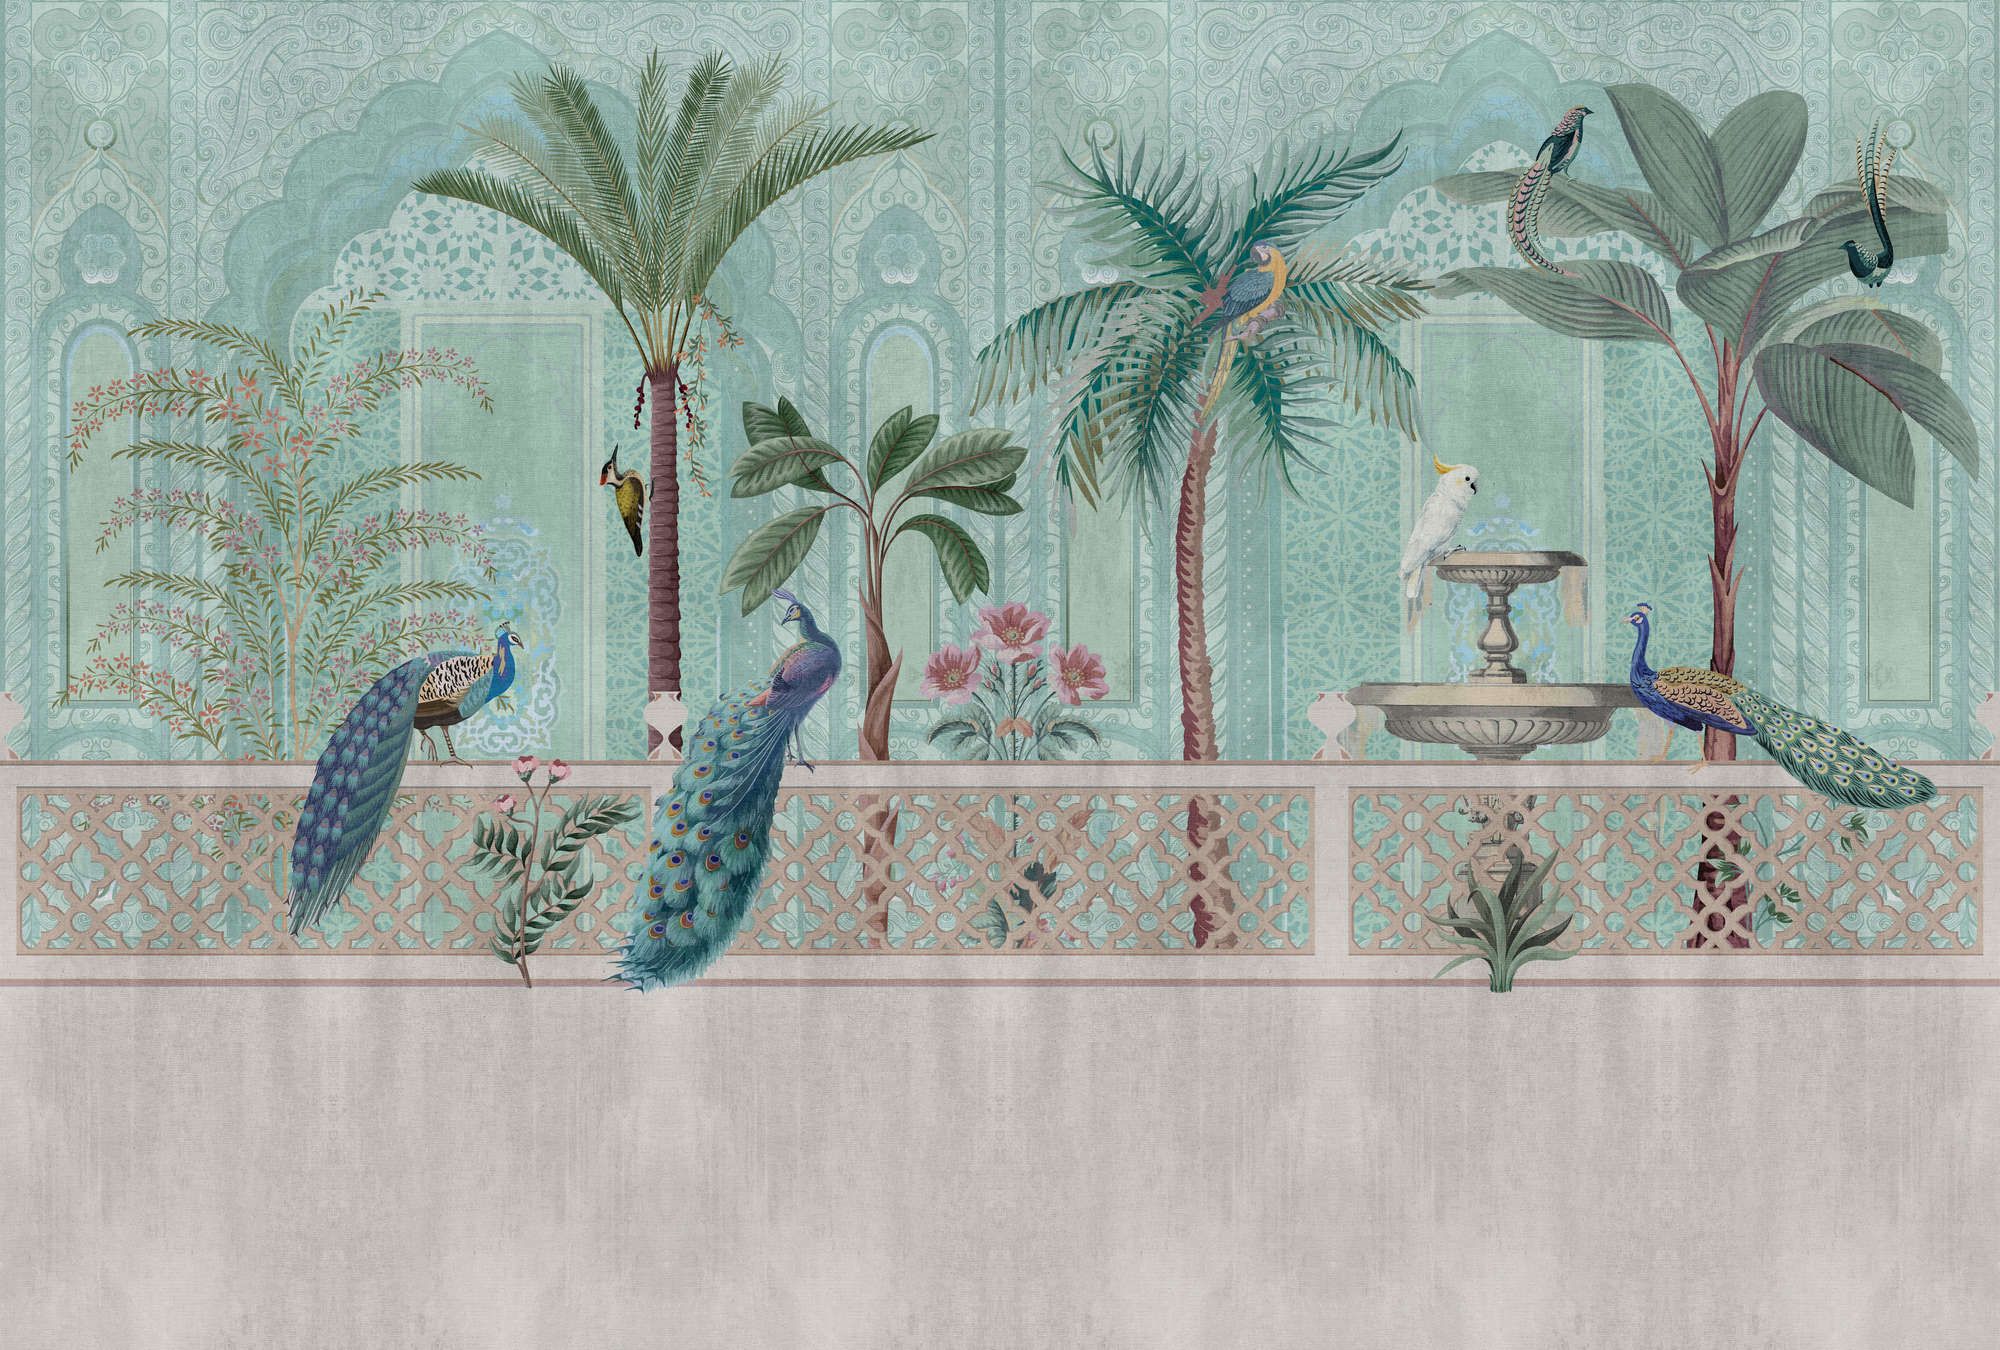             Fototapete »pavo« - Vögel, Palmen & Brunnen – Grün, Blau mit Gobelinstruktur | Glattes, leicht perlmutt-schimmerndes Vlies
        